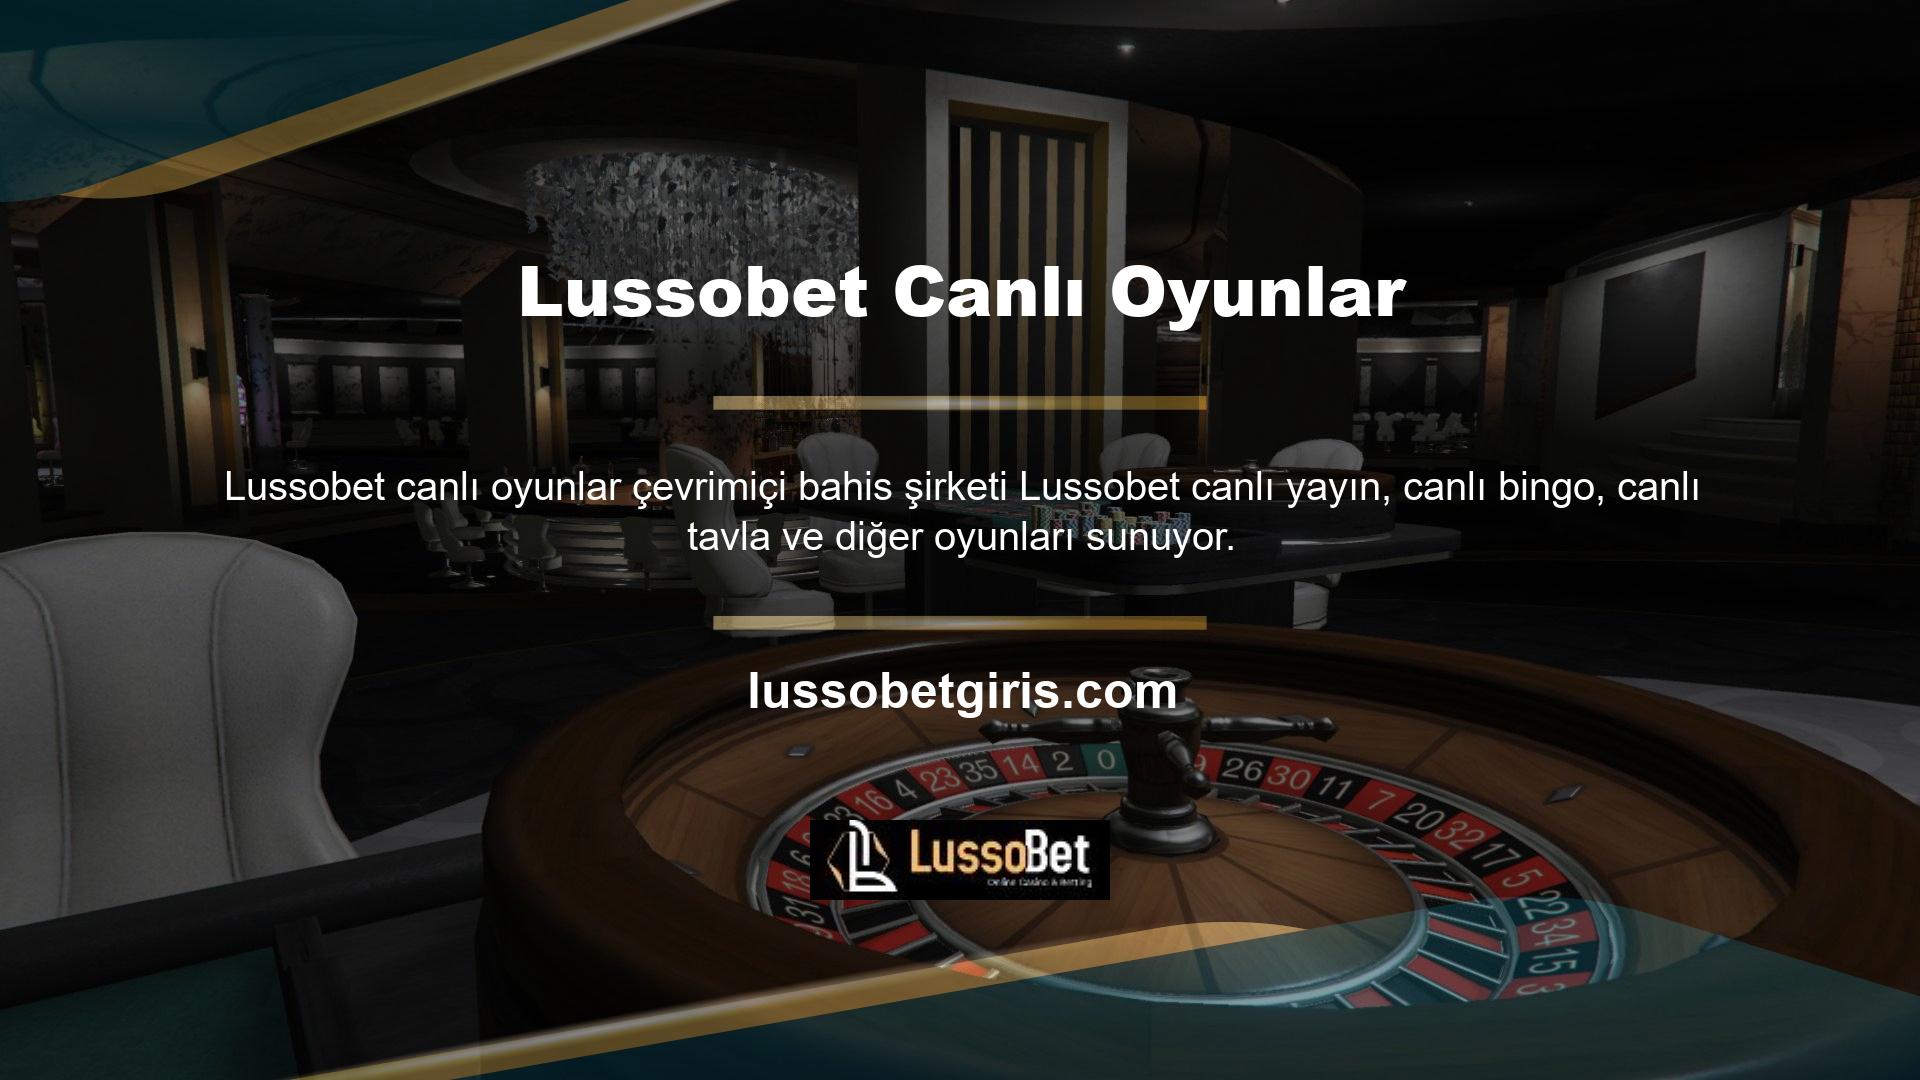 Lussobet Tılsımı diye adlandırılan bir şeye göre sanal sporlar, casino oyunları ve canlı casino kategorilerinde özel bahisler için çok küçük miktarlar kullanılabiliyor